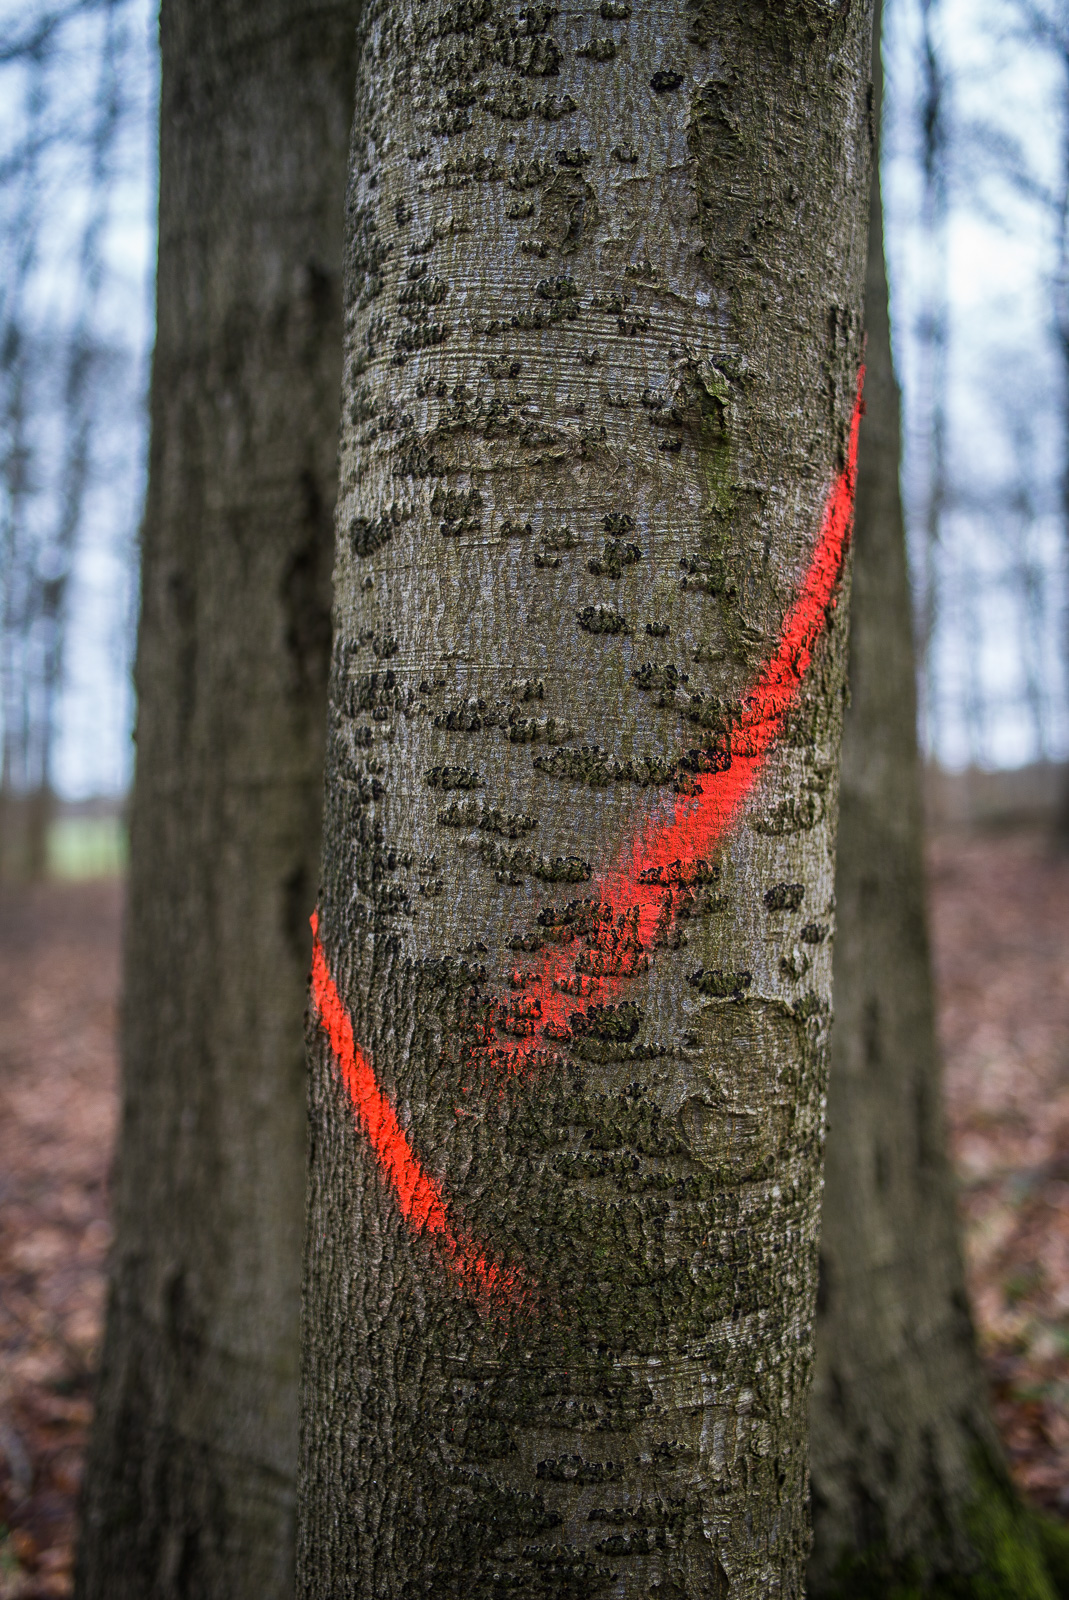 Ein dünner Baumstamm steht vor einem dickeren. Zwei rote Kreidemarkierungen auf dem vorderen Stamm bilden in etwa ein Häkchen, das die Bildmitte dominiert.